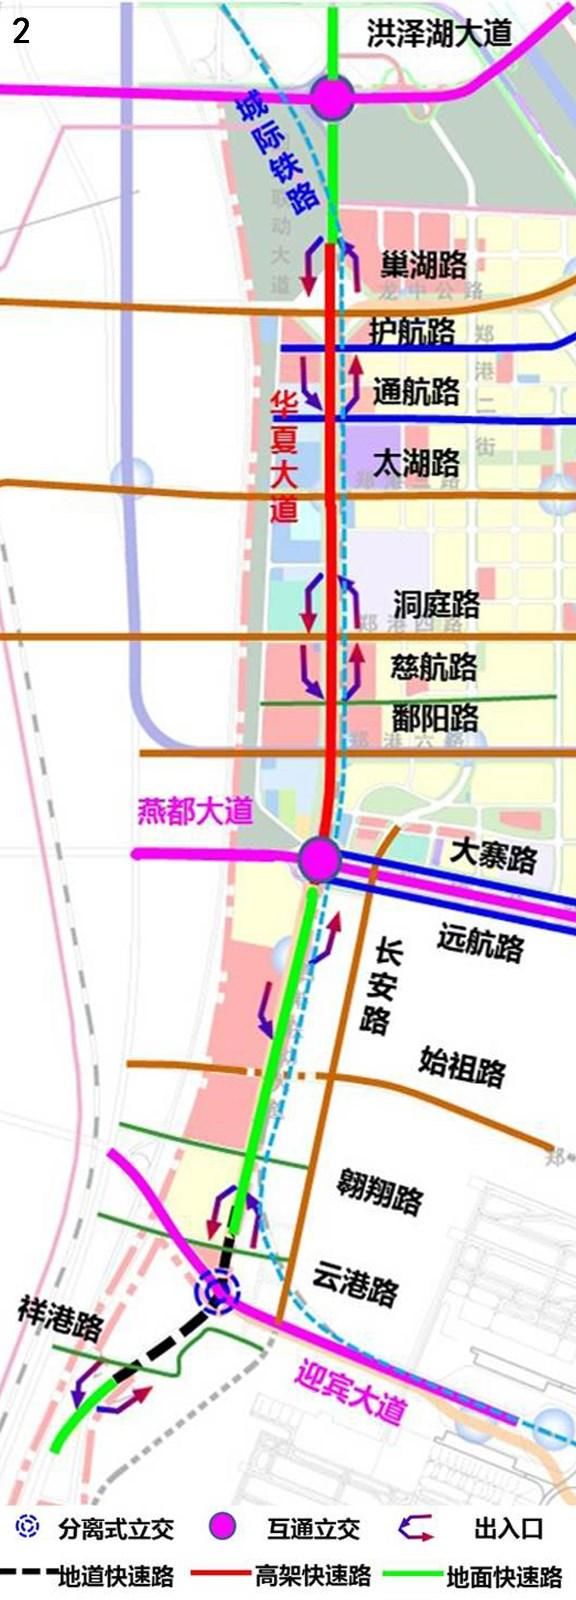 去郑州机场将更方便,华夏大道拟建10公里高架桥和隧道